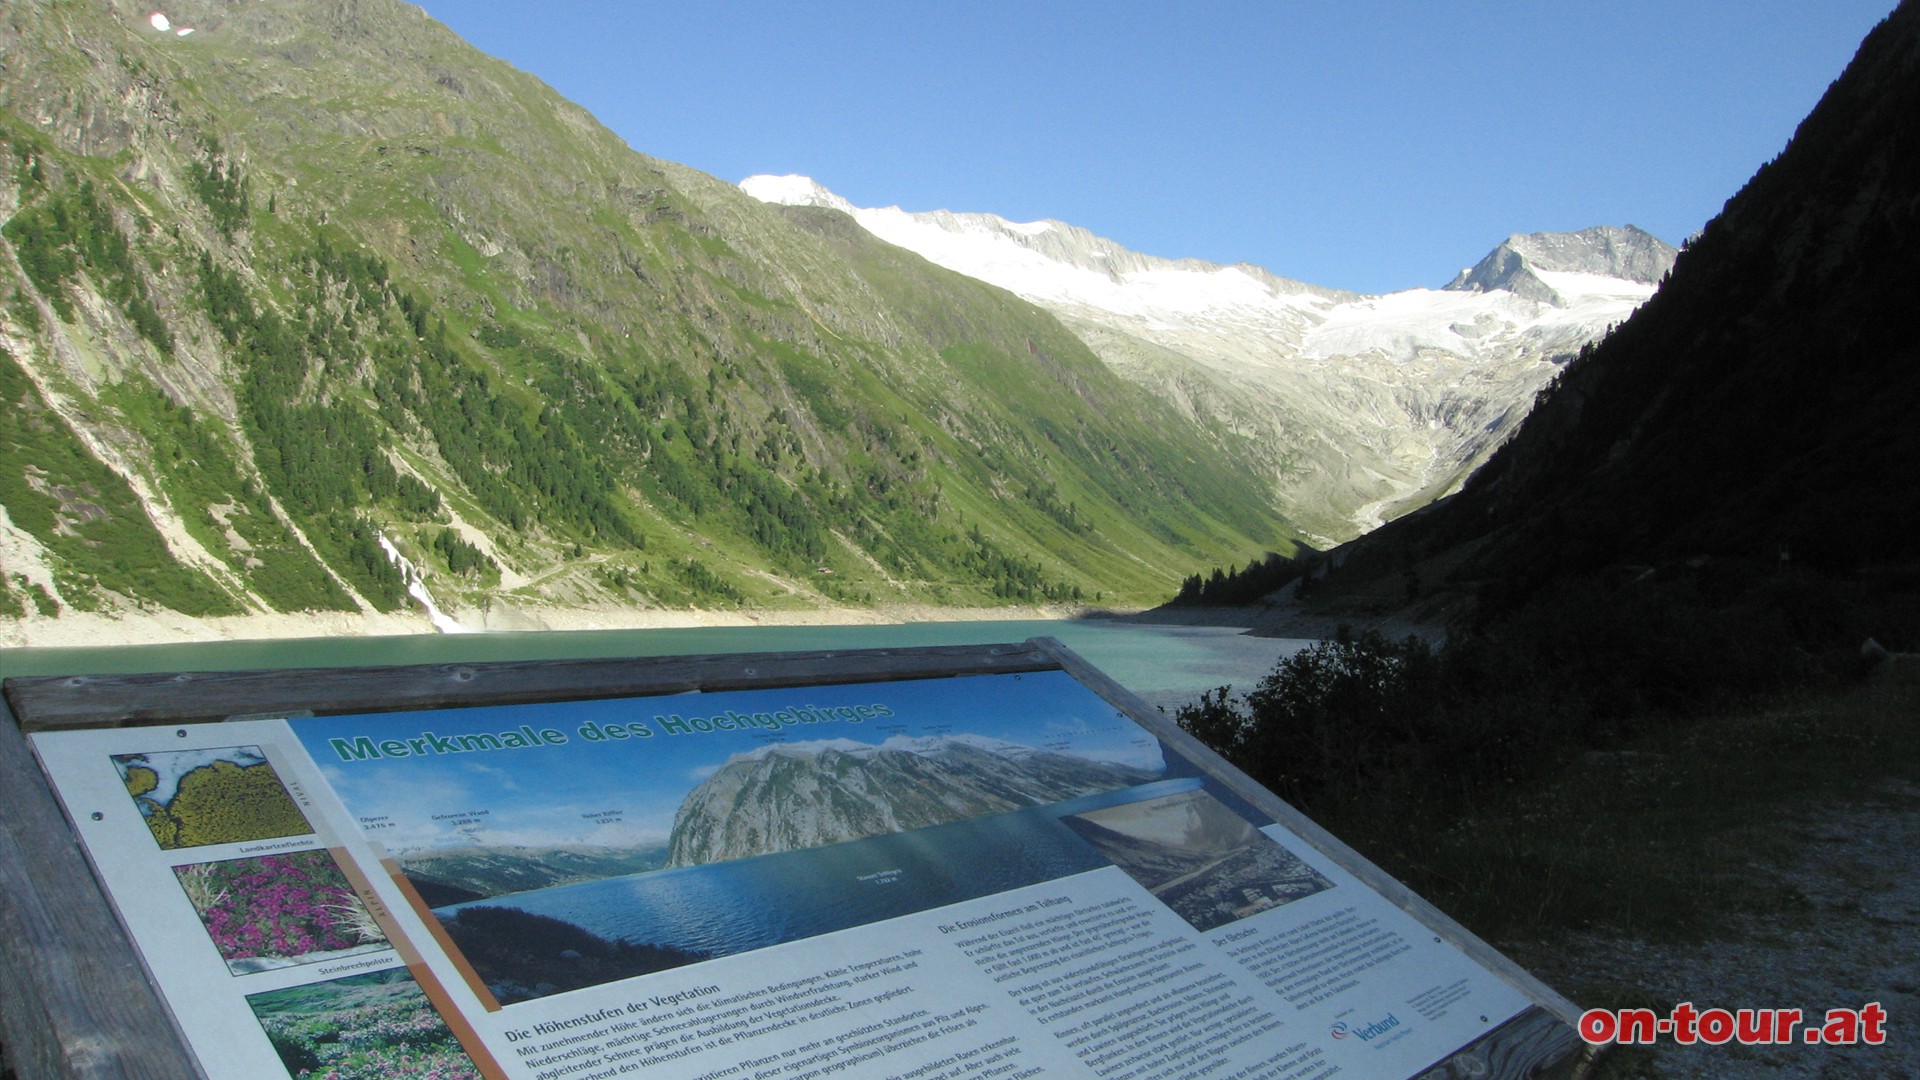 Das leuchtende Schlegeiskees am Ende des Schlegeisgrundes, mit etwa 5 km² Fläche der größte Gletscher der Zillertaler Alpen, weist den Weg nach oben.